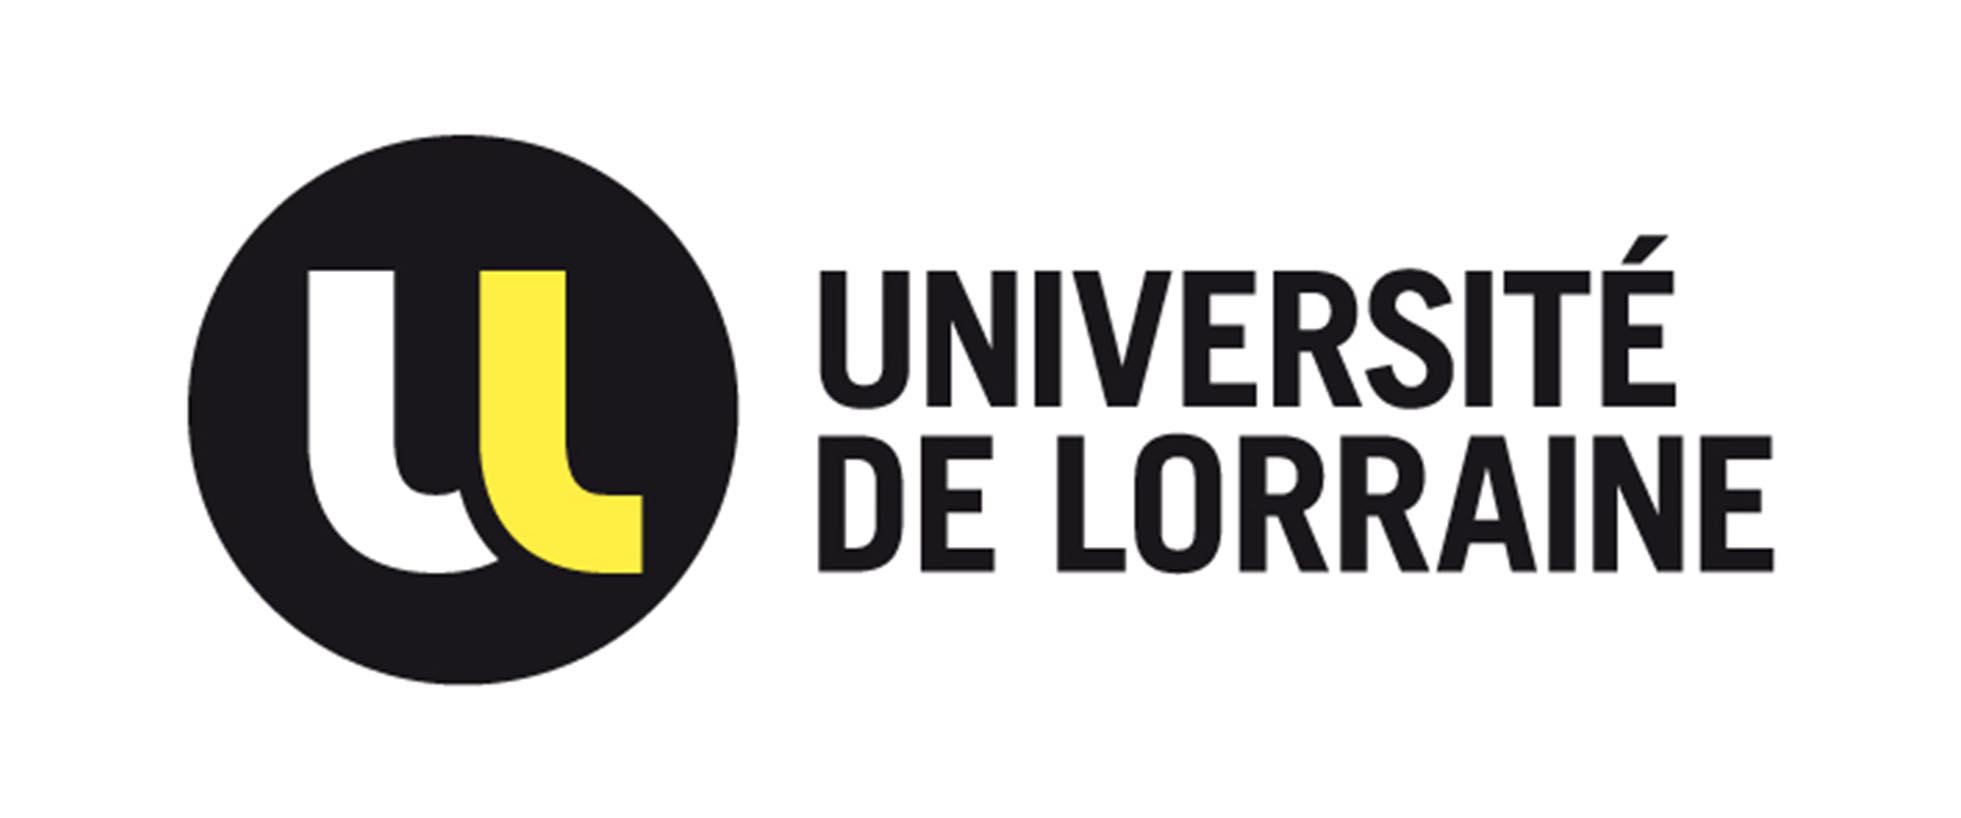 Logo ul